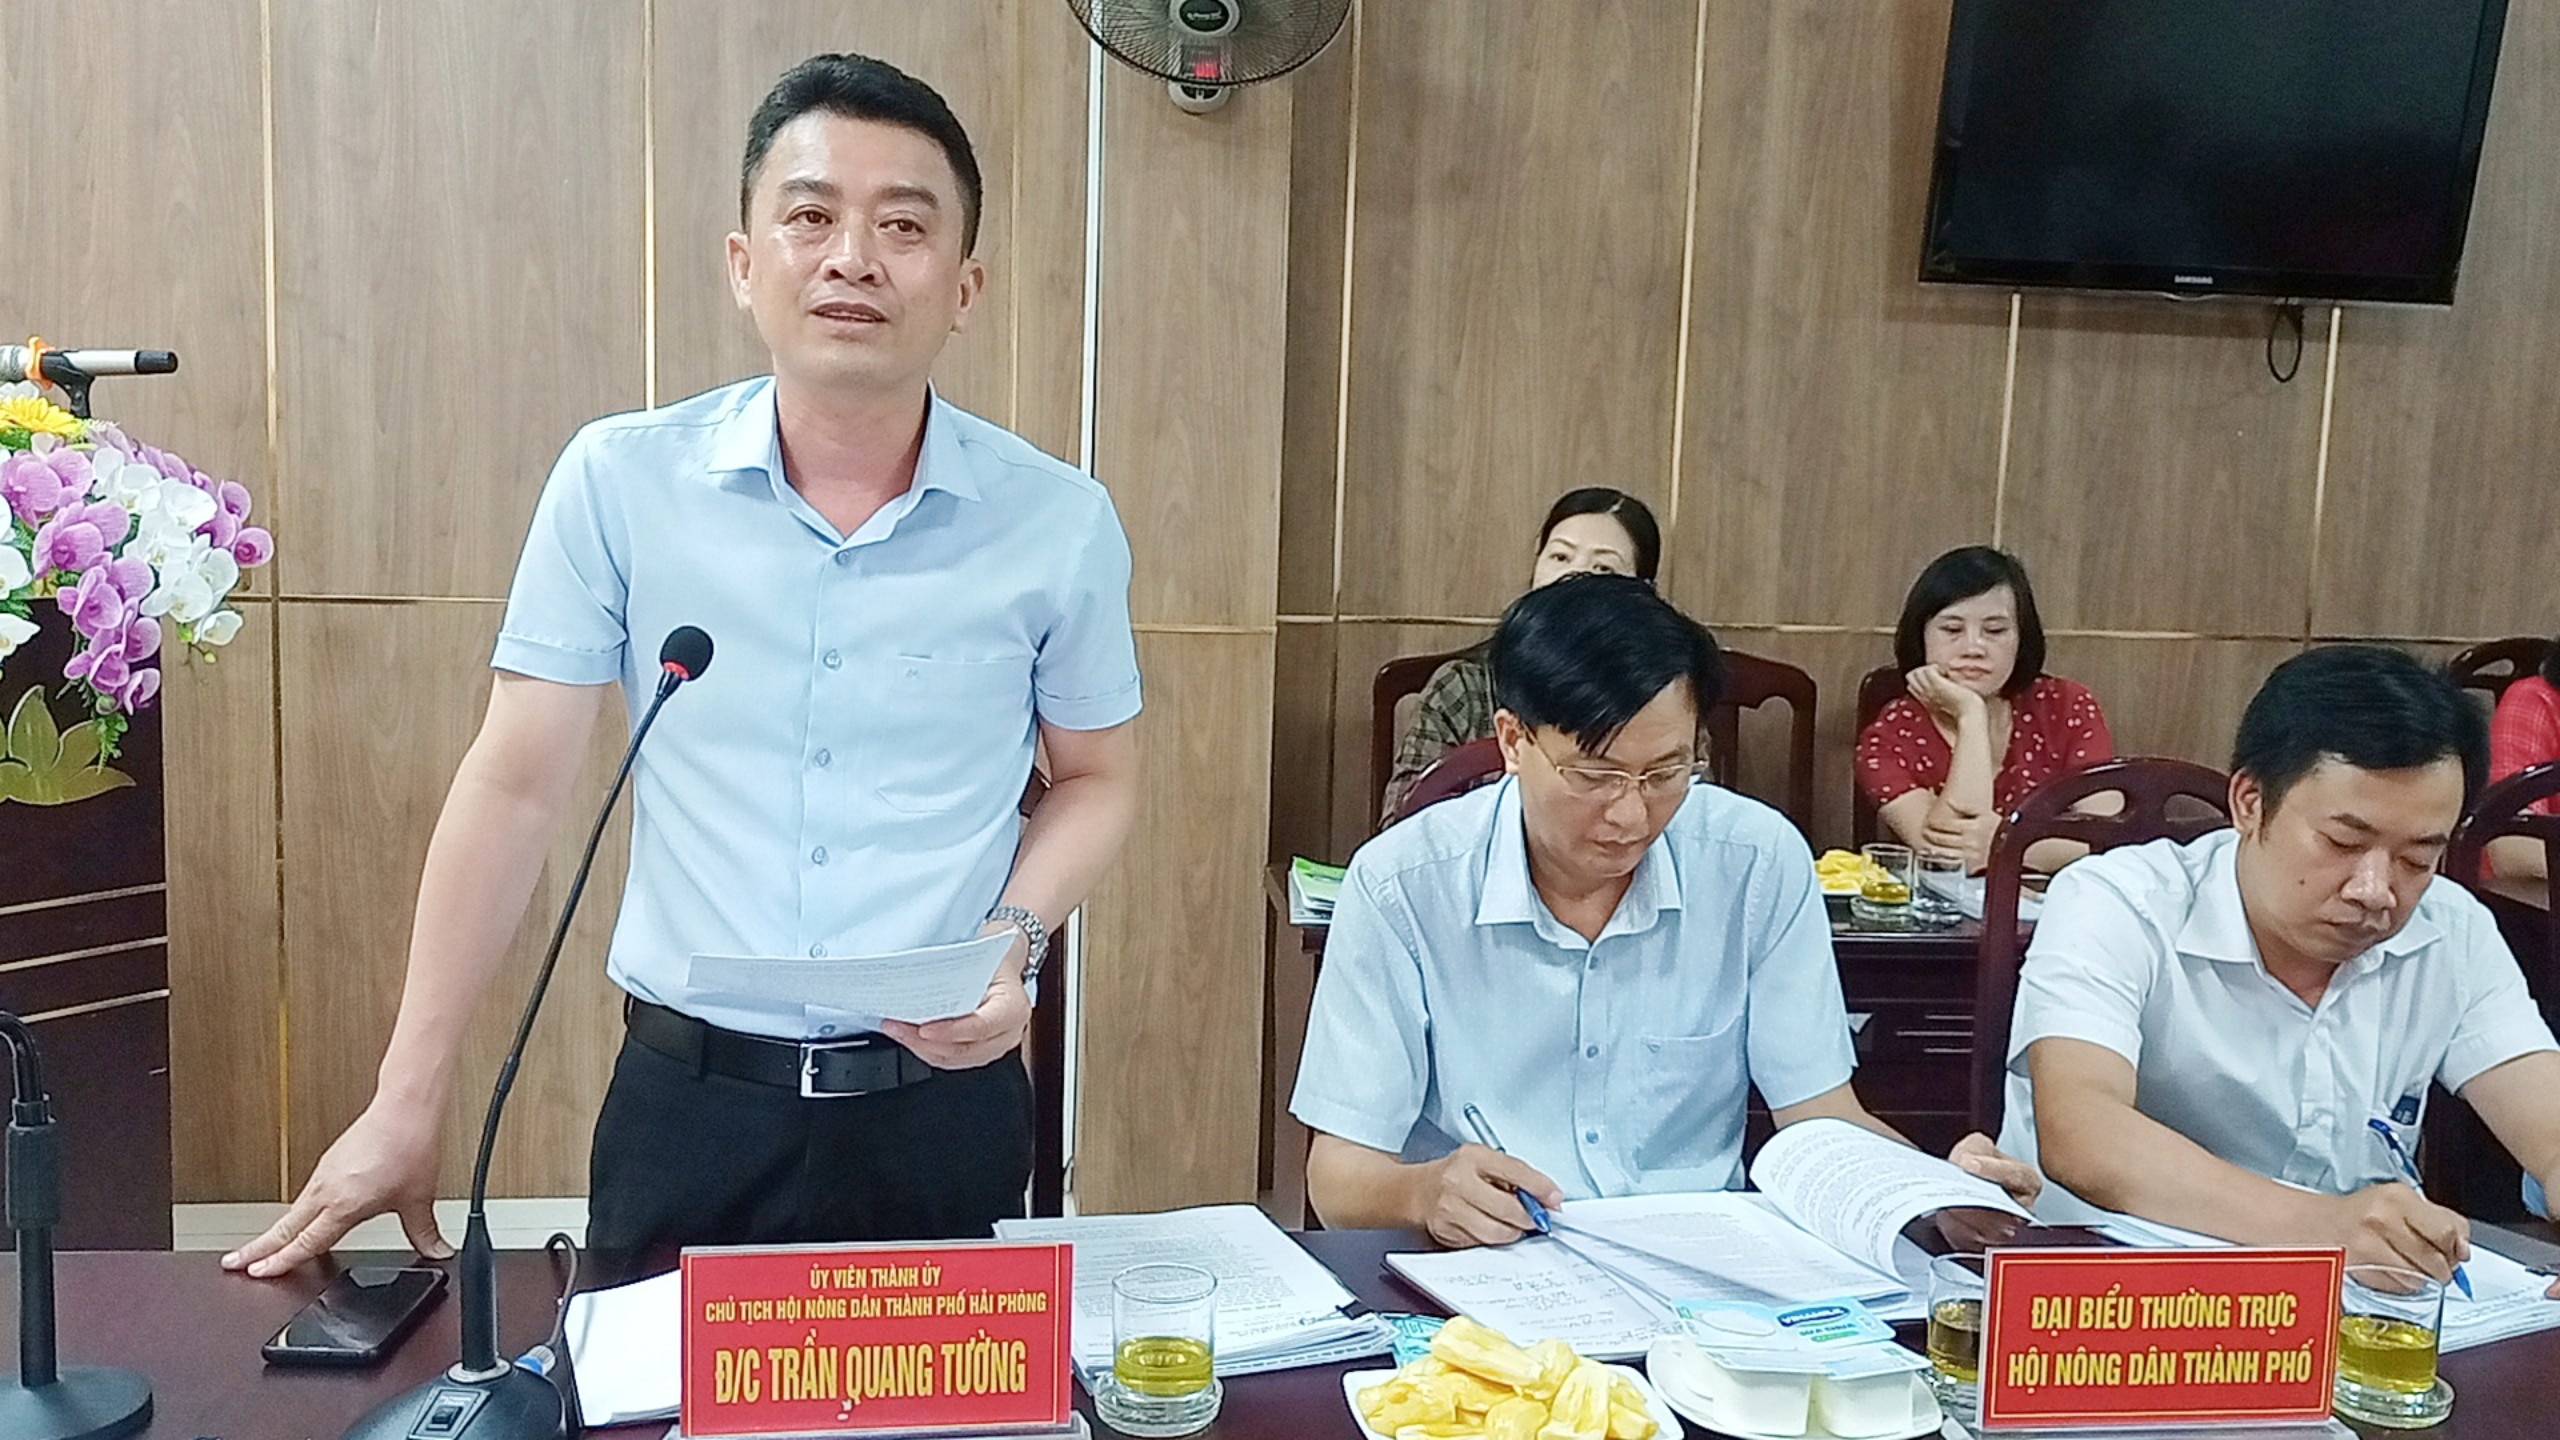 Phó Chủ tịch Bùi Thị Thơm và đoàn công tác TƯ Hội NDVN làm việc với Hội Nông dân Hải Phòng- Ảnh 3.